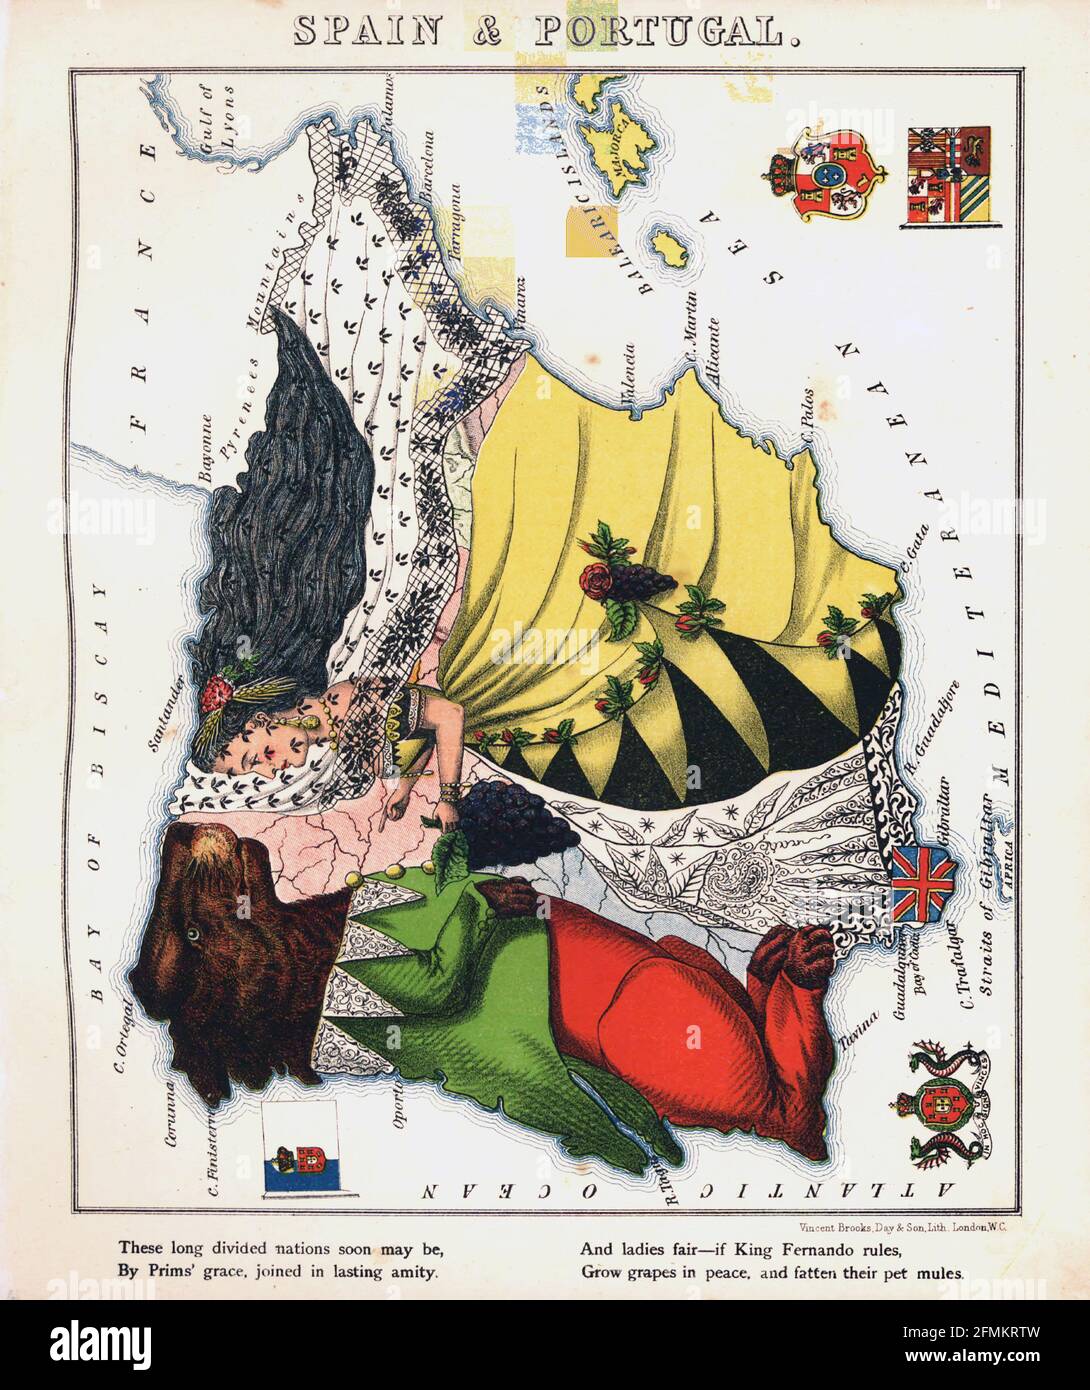 Spanien und Portugal – geographischer Spaß. Illustrierte satirische/kartografische Karte. Veröffentlicht in London von der Firma Hodder und Stoughton im Jahr 1869. Stockfoto